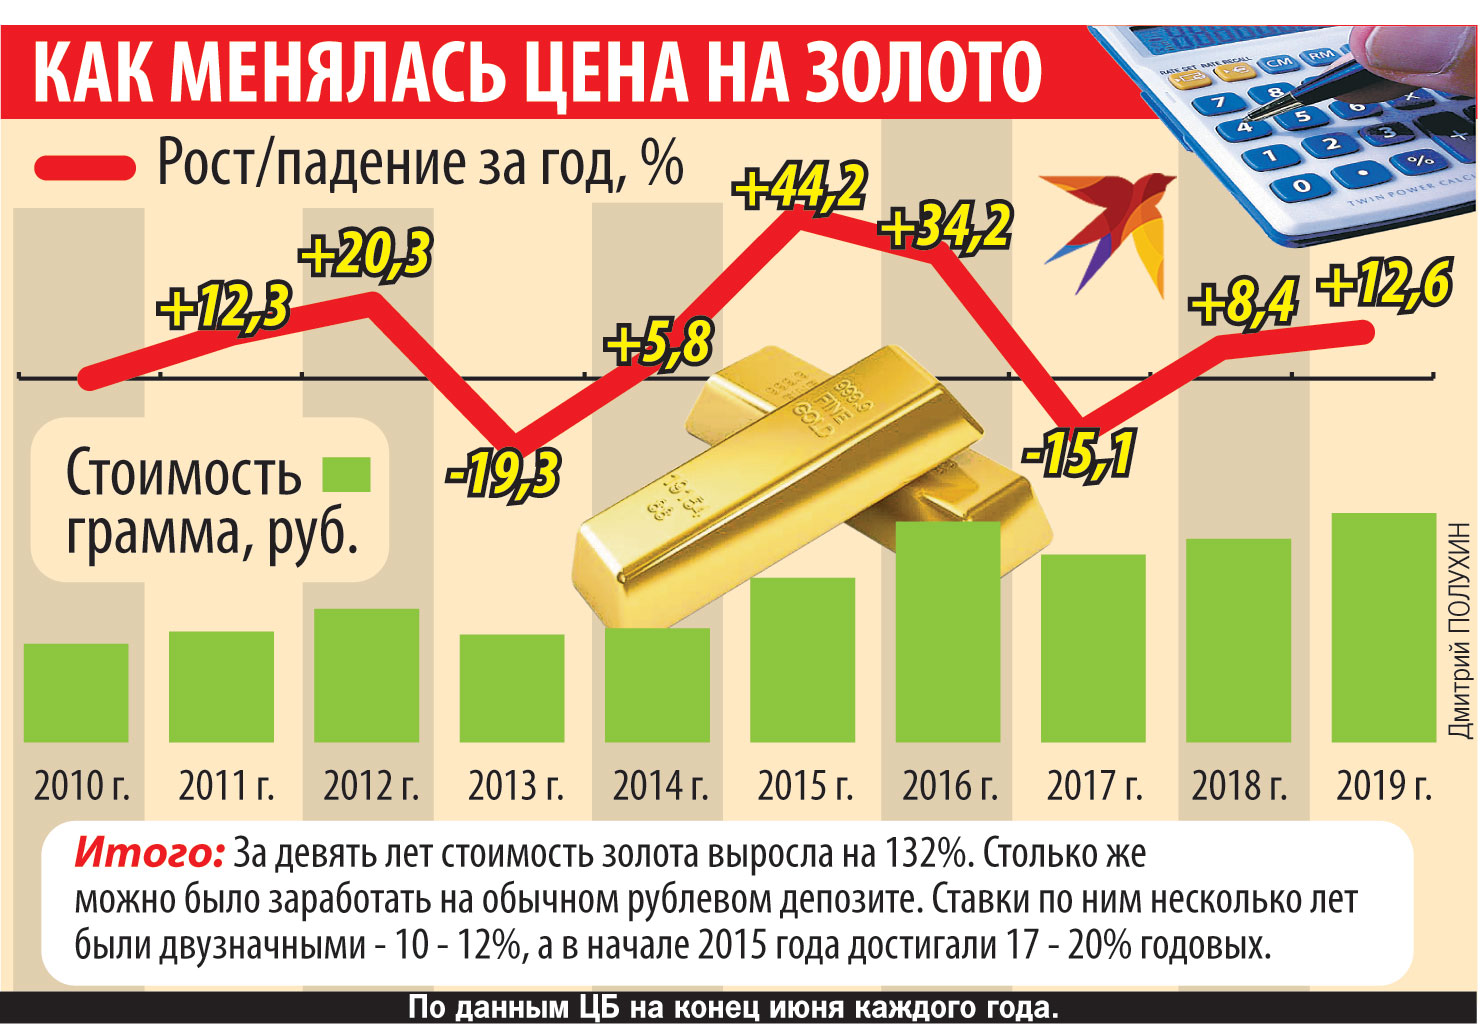 Цена грамма золота на сегодняшний день. Инвестиционные слитки золота. Рост стоимости золота. Стоимость золота. Грамм золота в России.